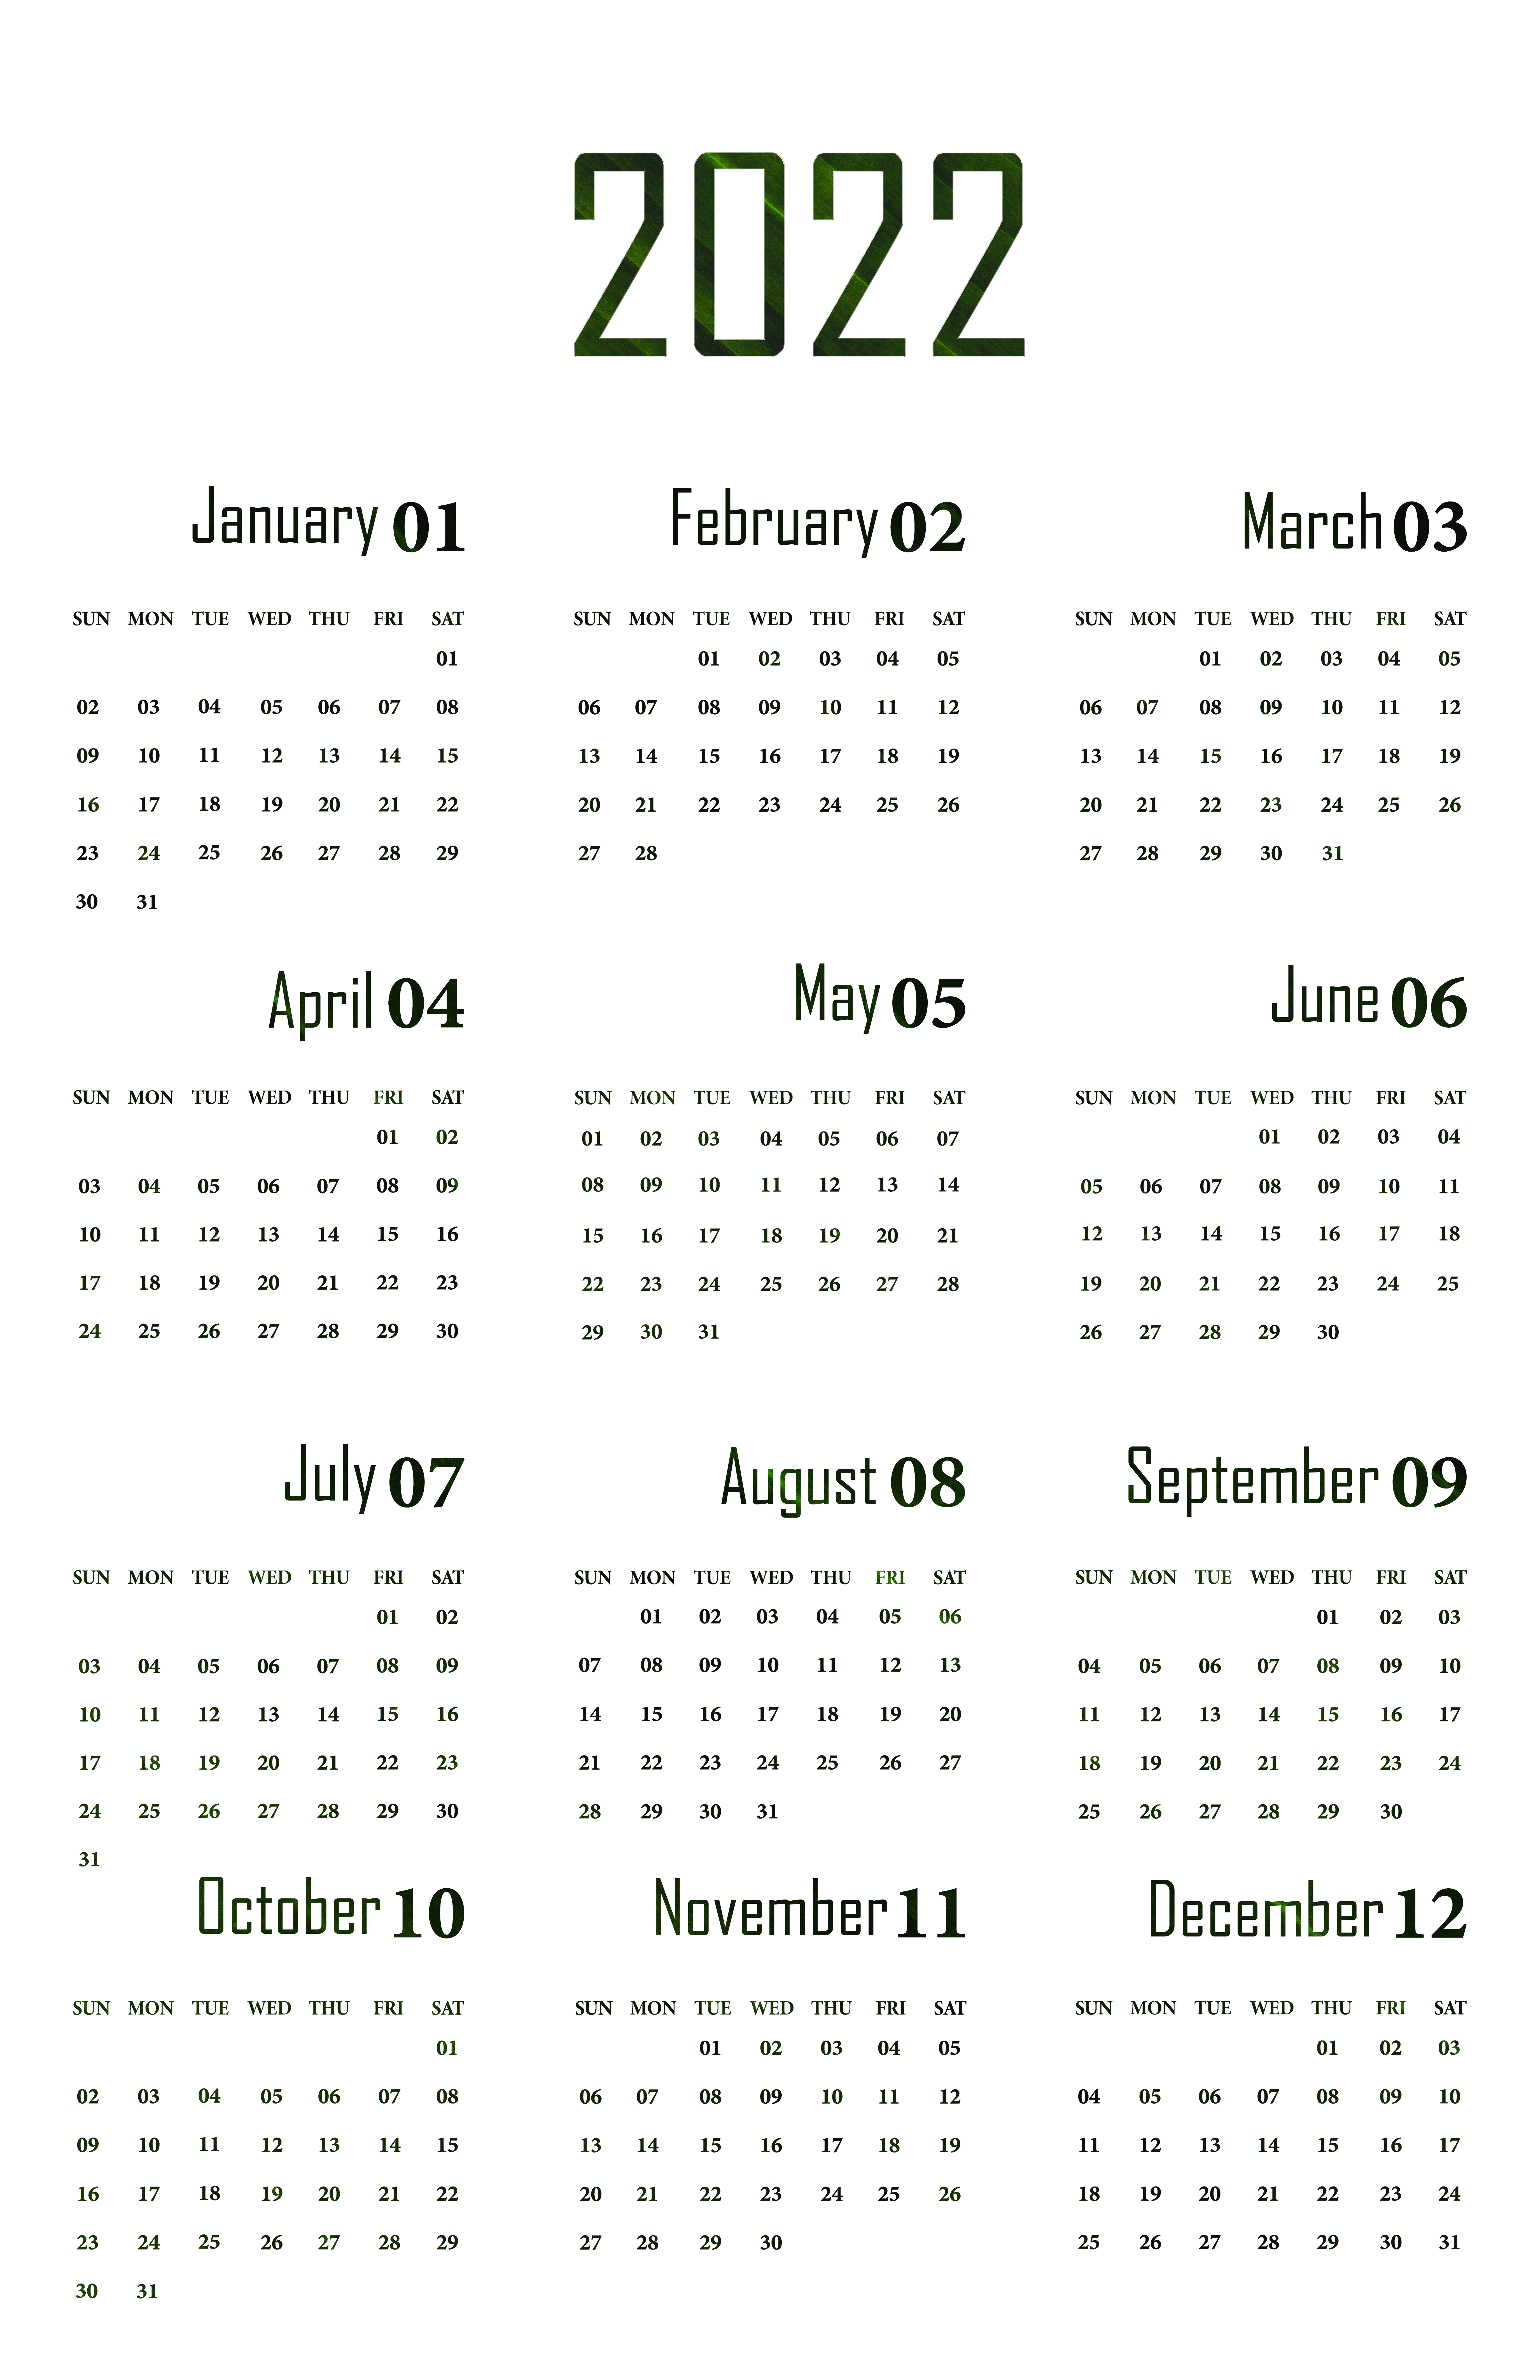 Calendário 2022 PNG Image Transparente